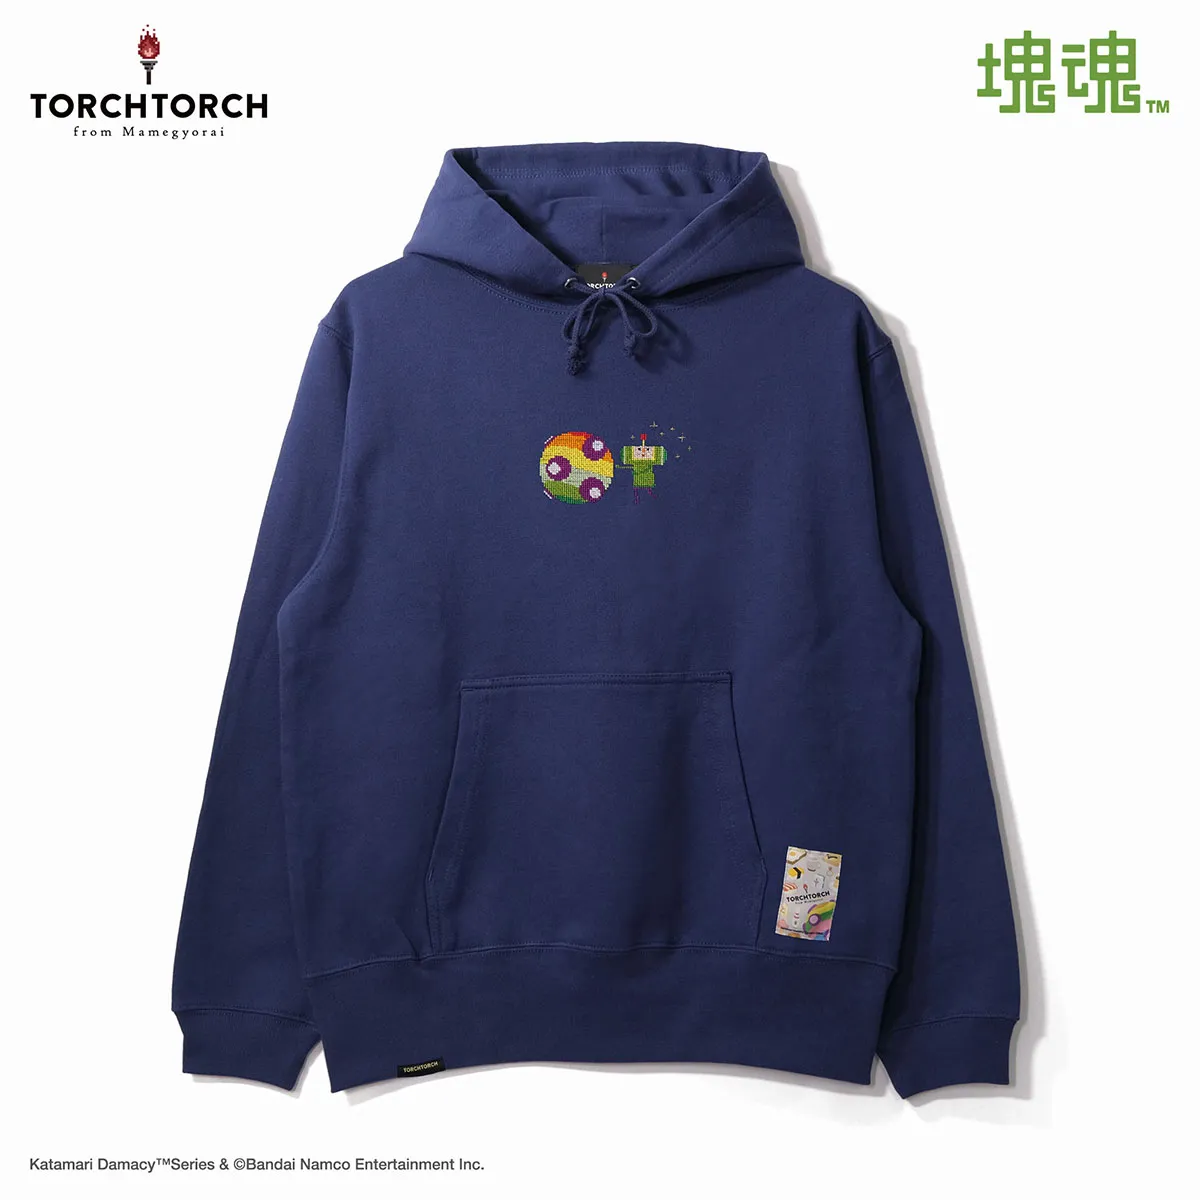 Katamari Damacy 20th Anniversary merchandise - hoodie